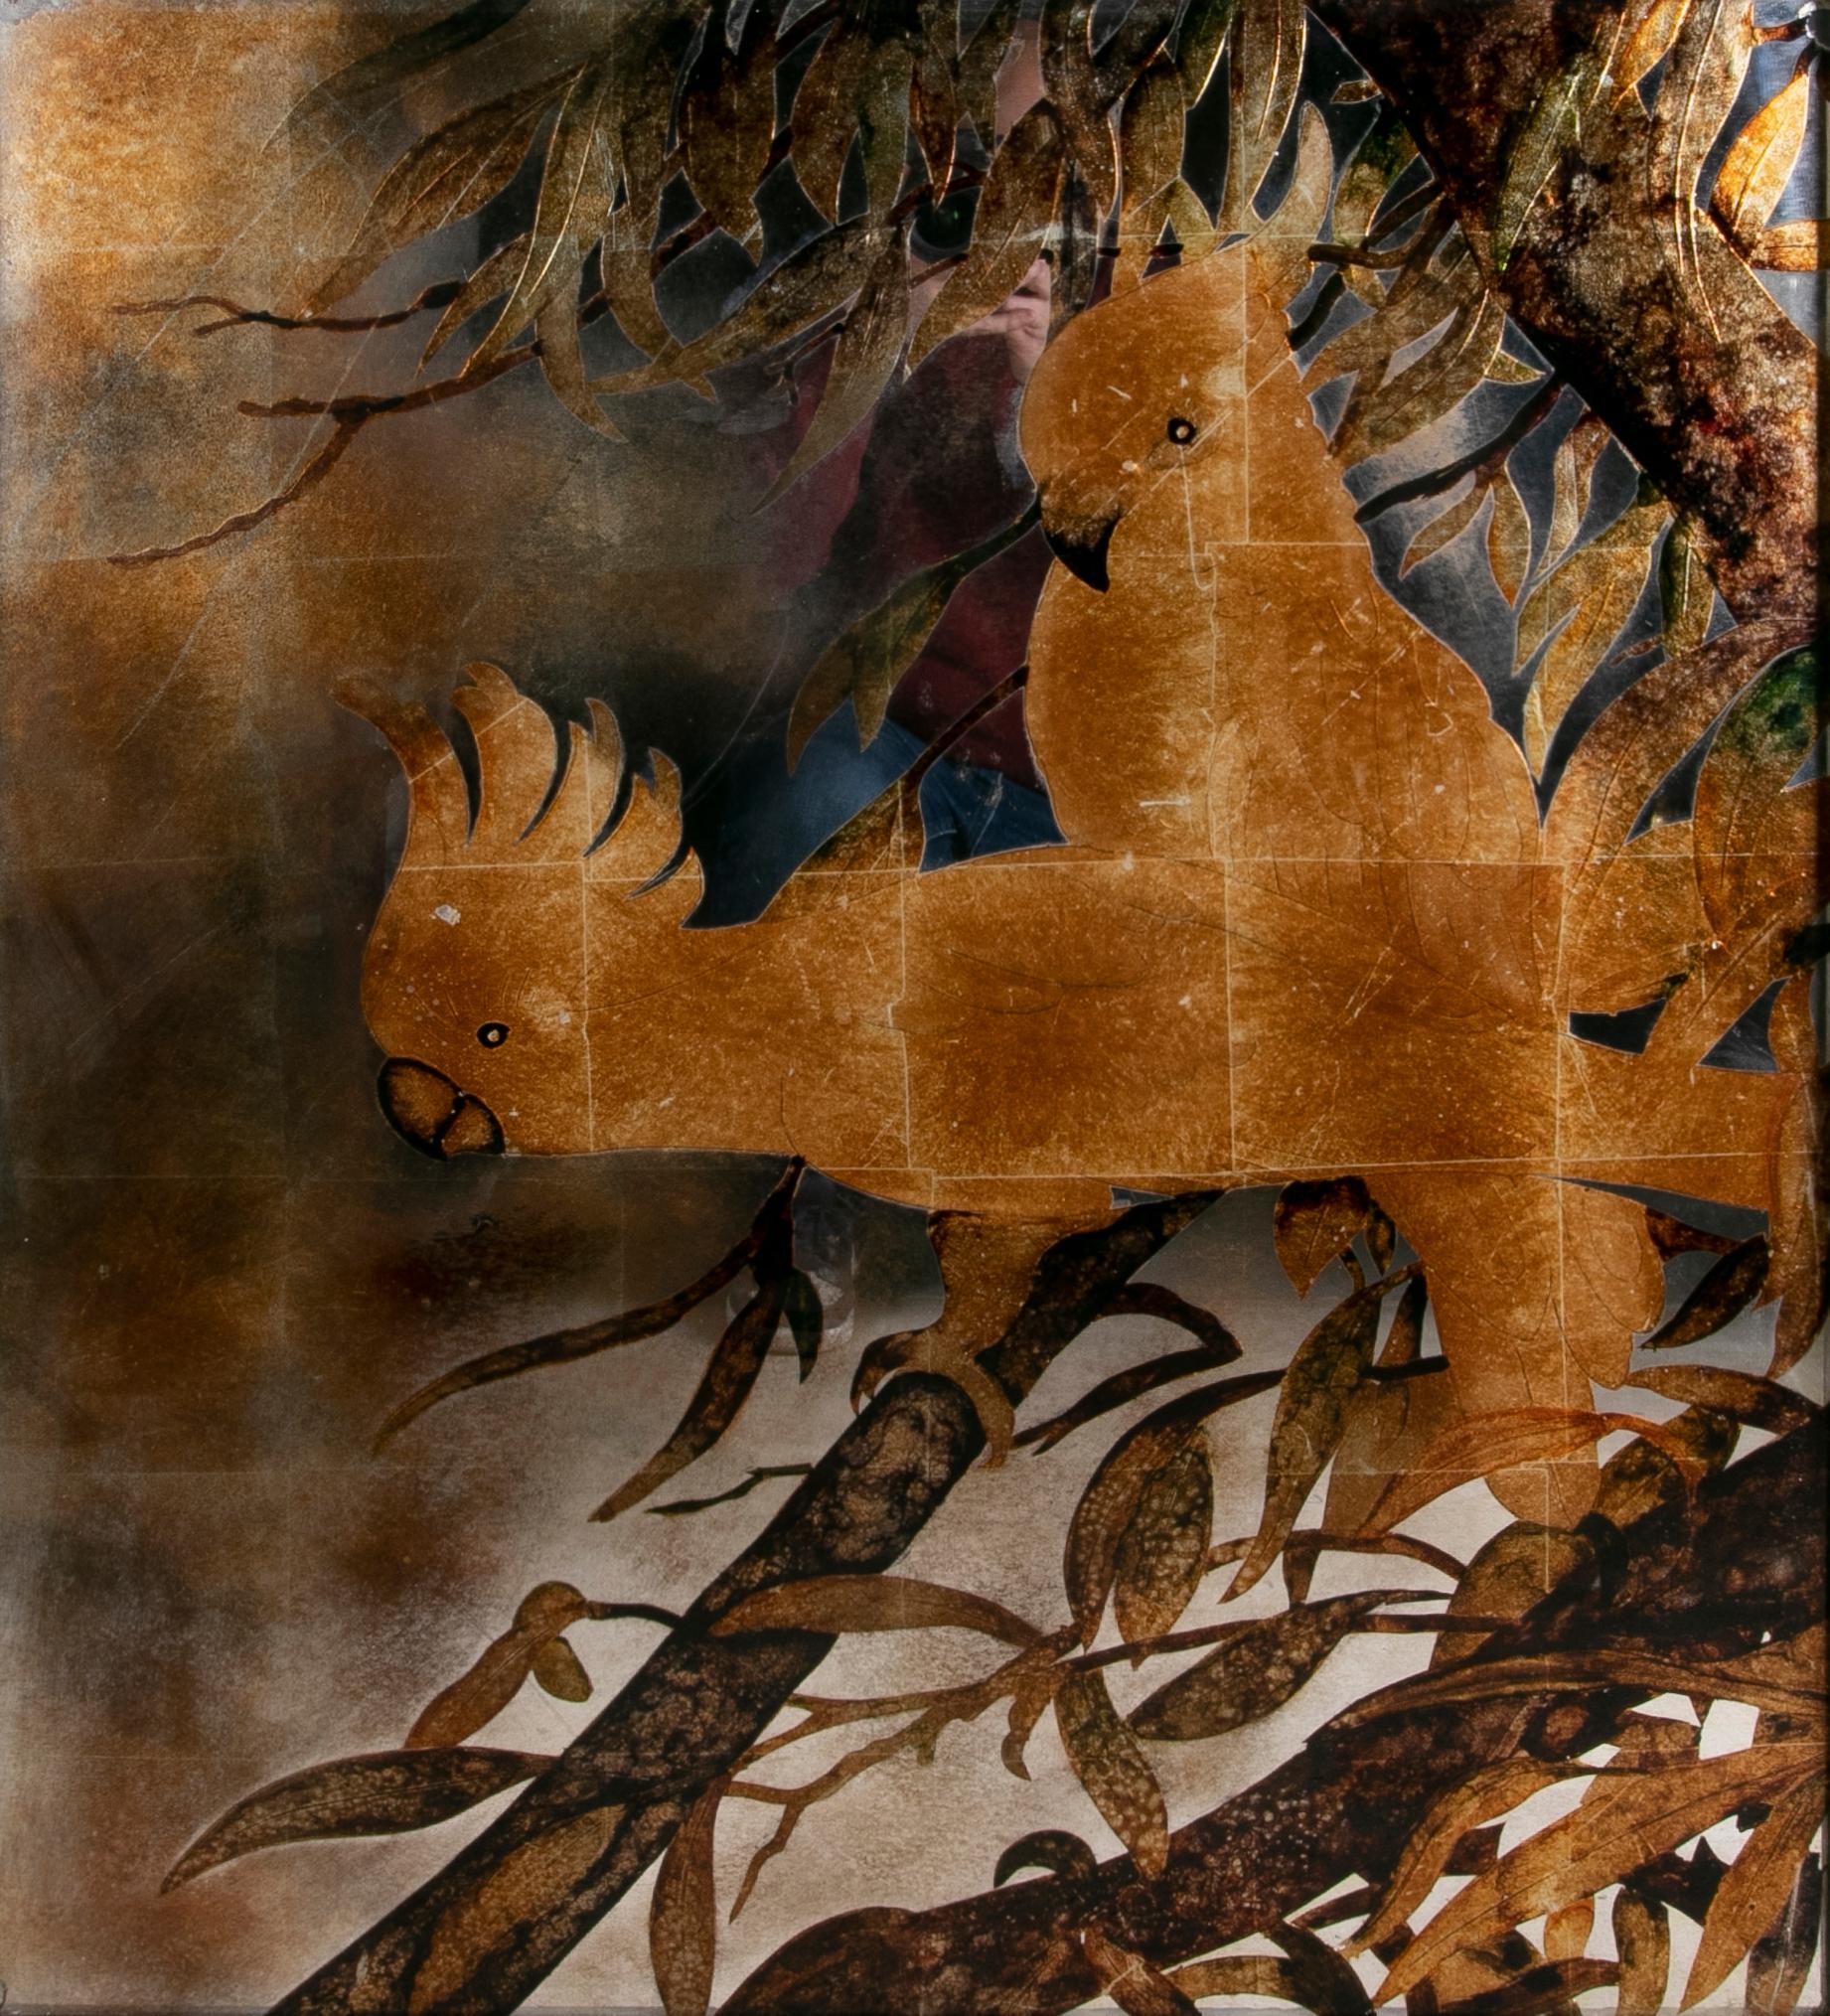 Gerahmtes, handbemaltes Bild auf Spiegel mit Papageien im Thema eines Baumes
Abmessungen mit Rahmen: 104x91x5cm.